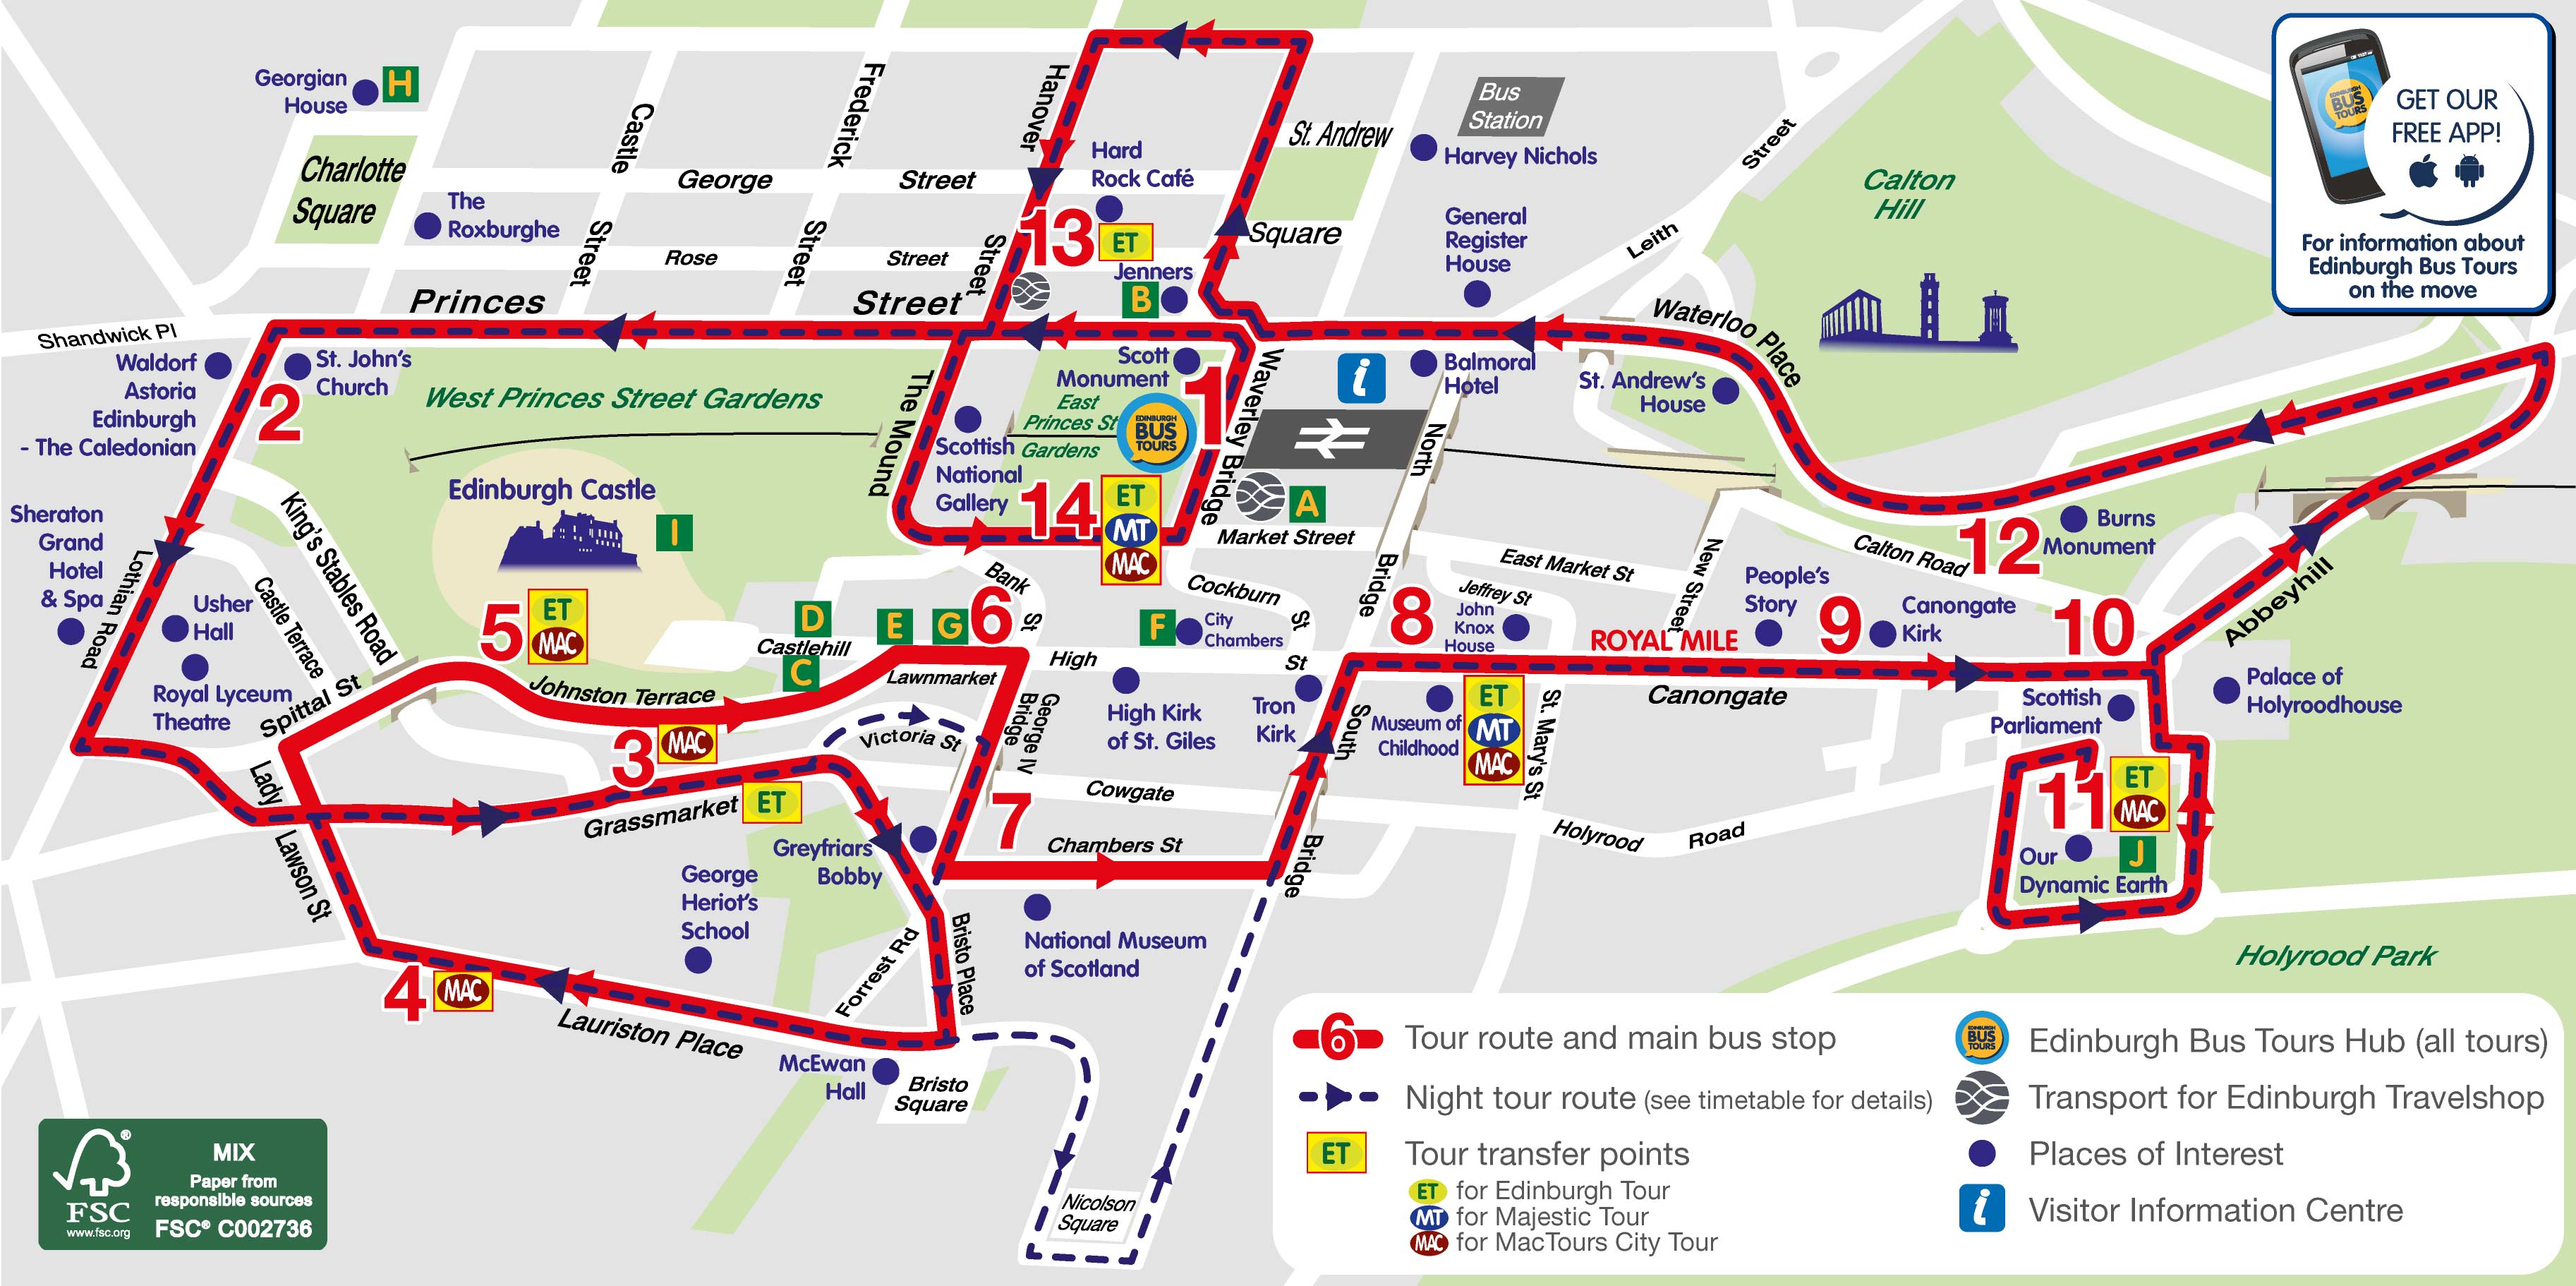 10 Best Edinburgh Hop On Off Bus Tours Pare S Maps 2022. 